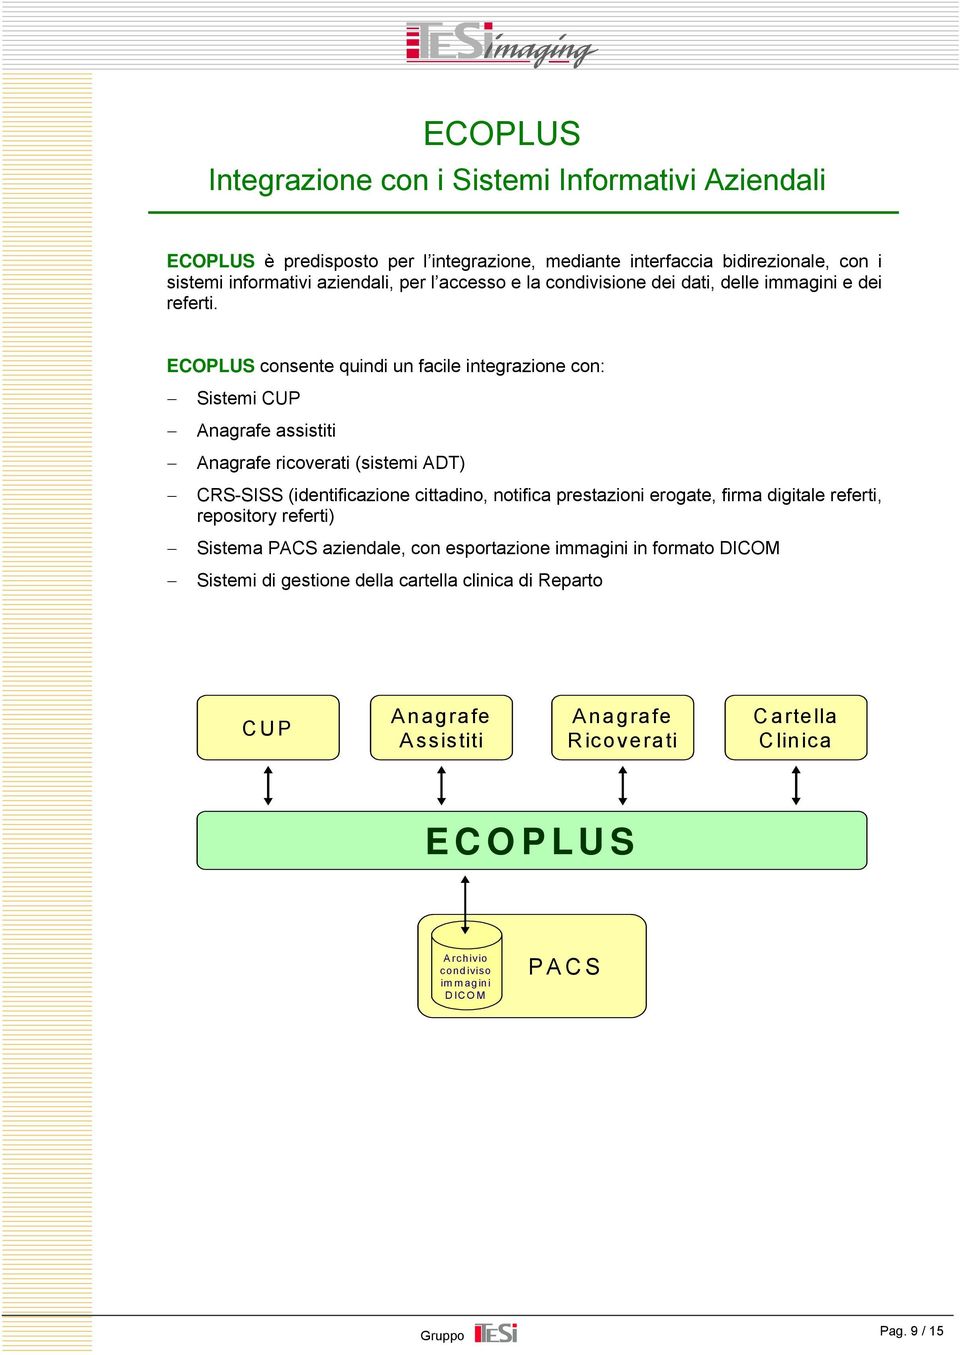 ECOPLUS consente quindi un facile integrazione con: Sistemi CUP Anagrafe assistiti Anagrafe ricoverati (sistemi ADT) CRS-SISS (identificazione cittadino, notifica prestazioni